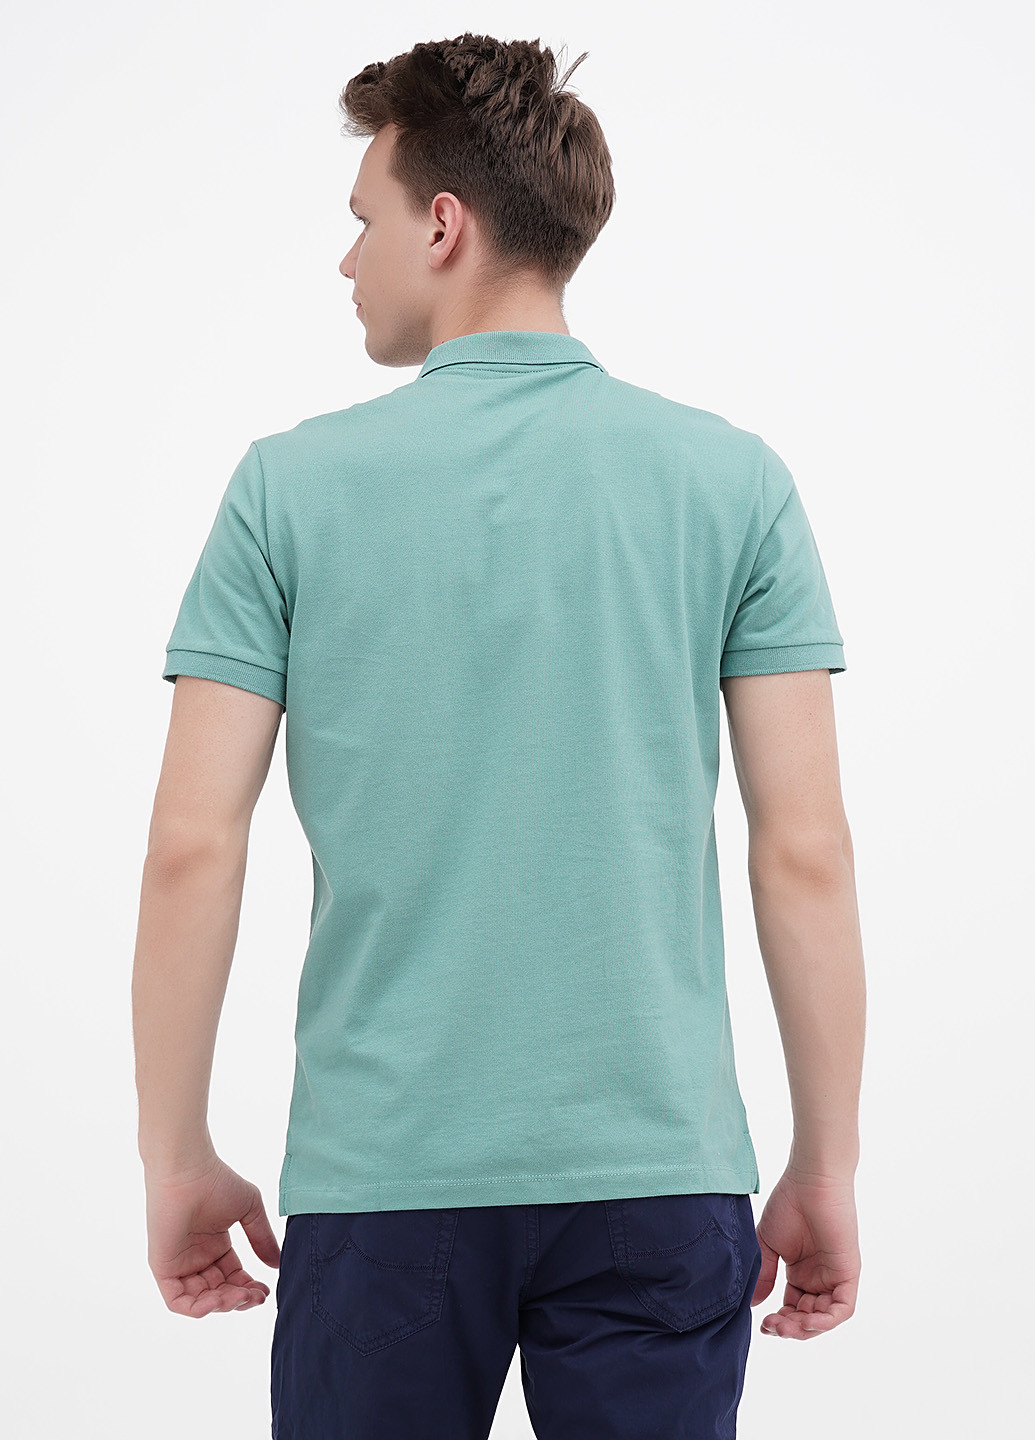 Зеленая футболка-поло для мужчин Armani Exchange с надписью